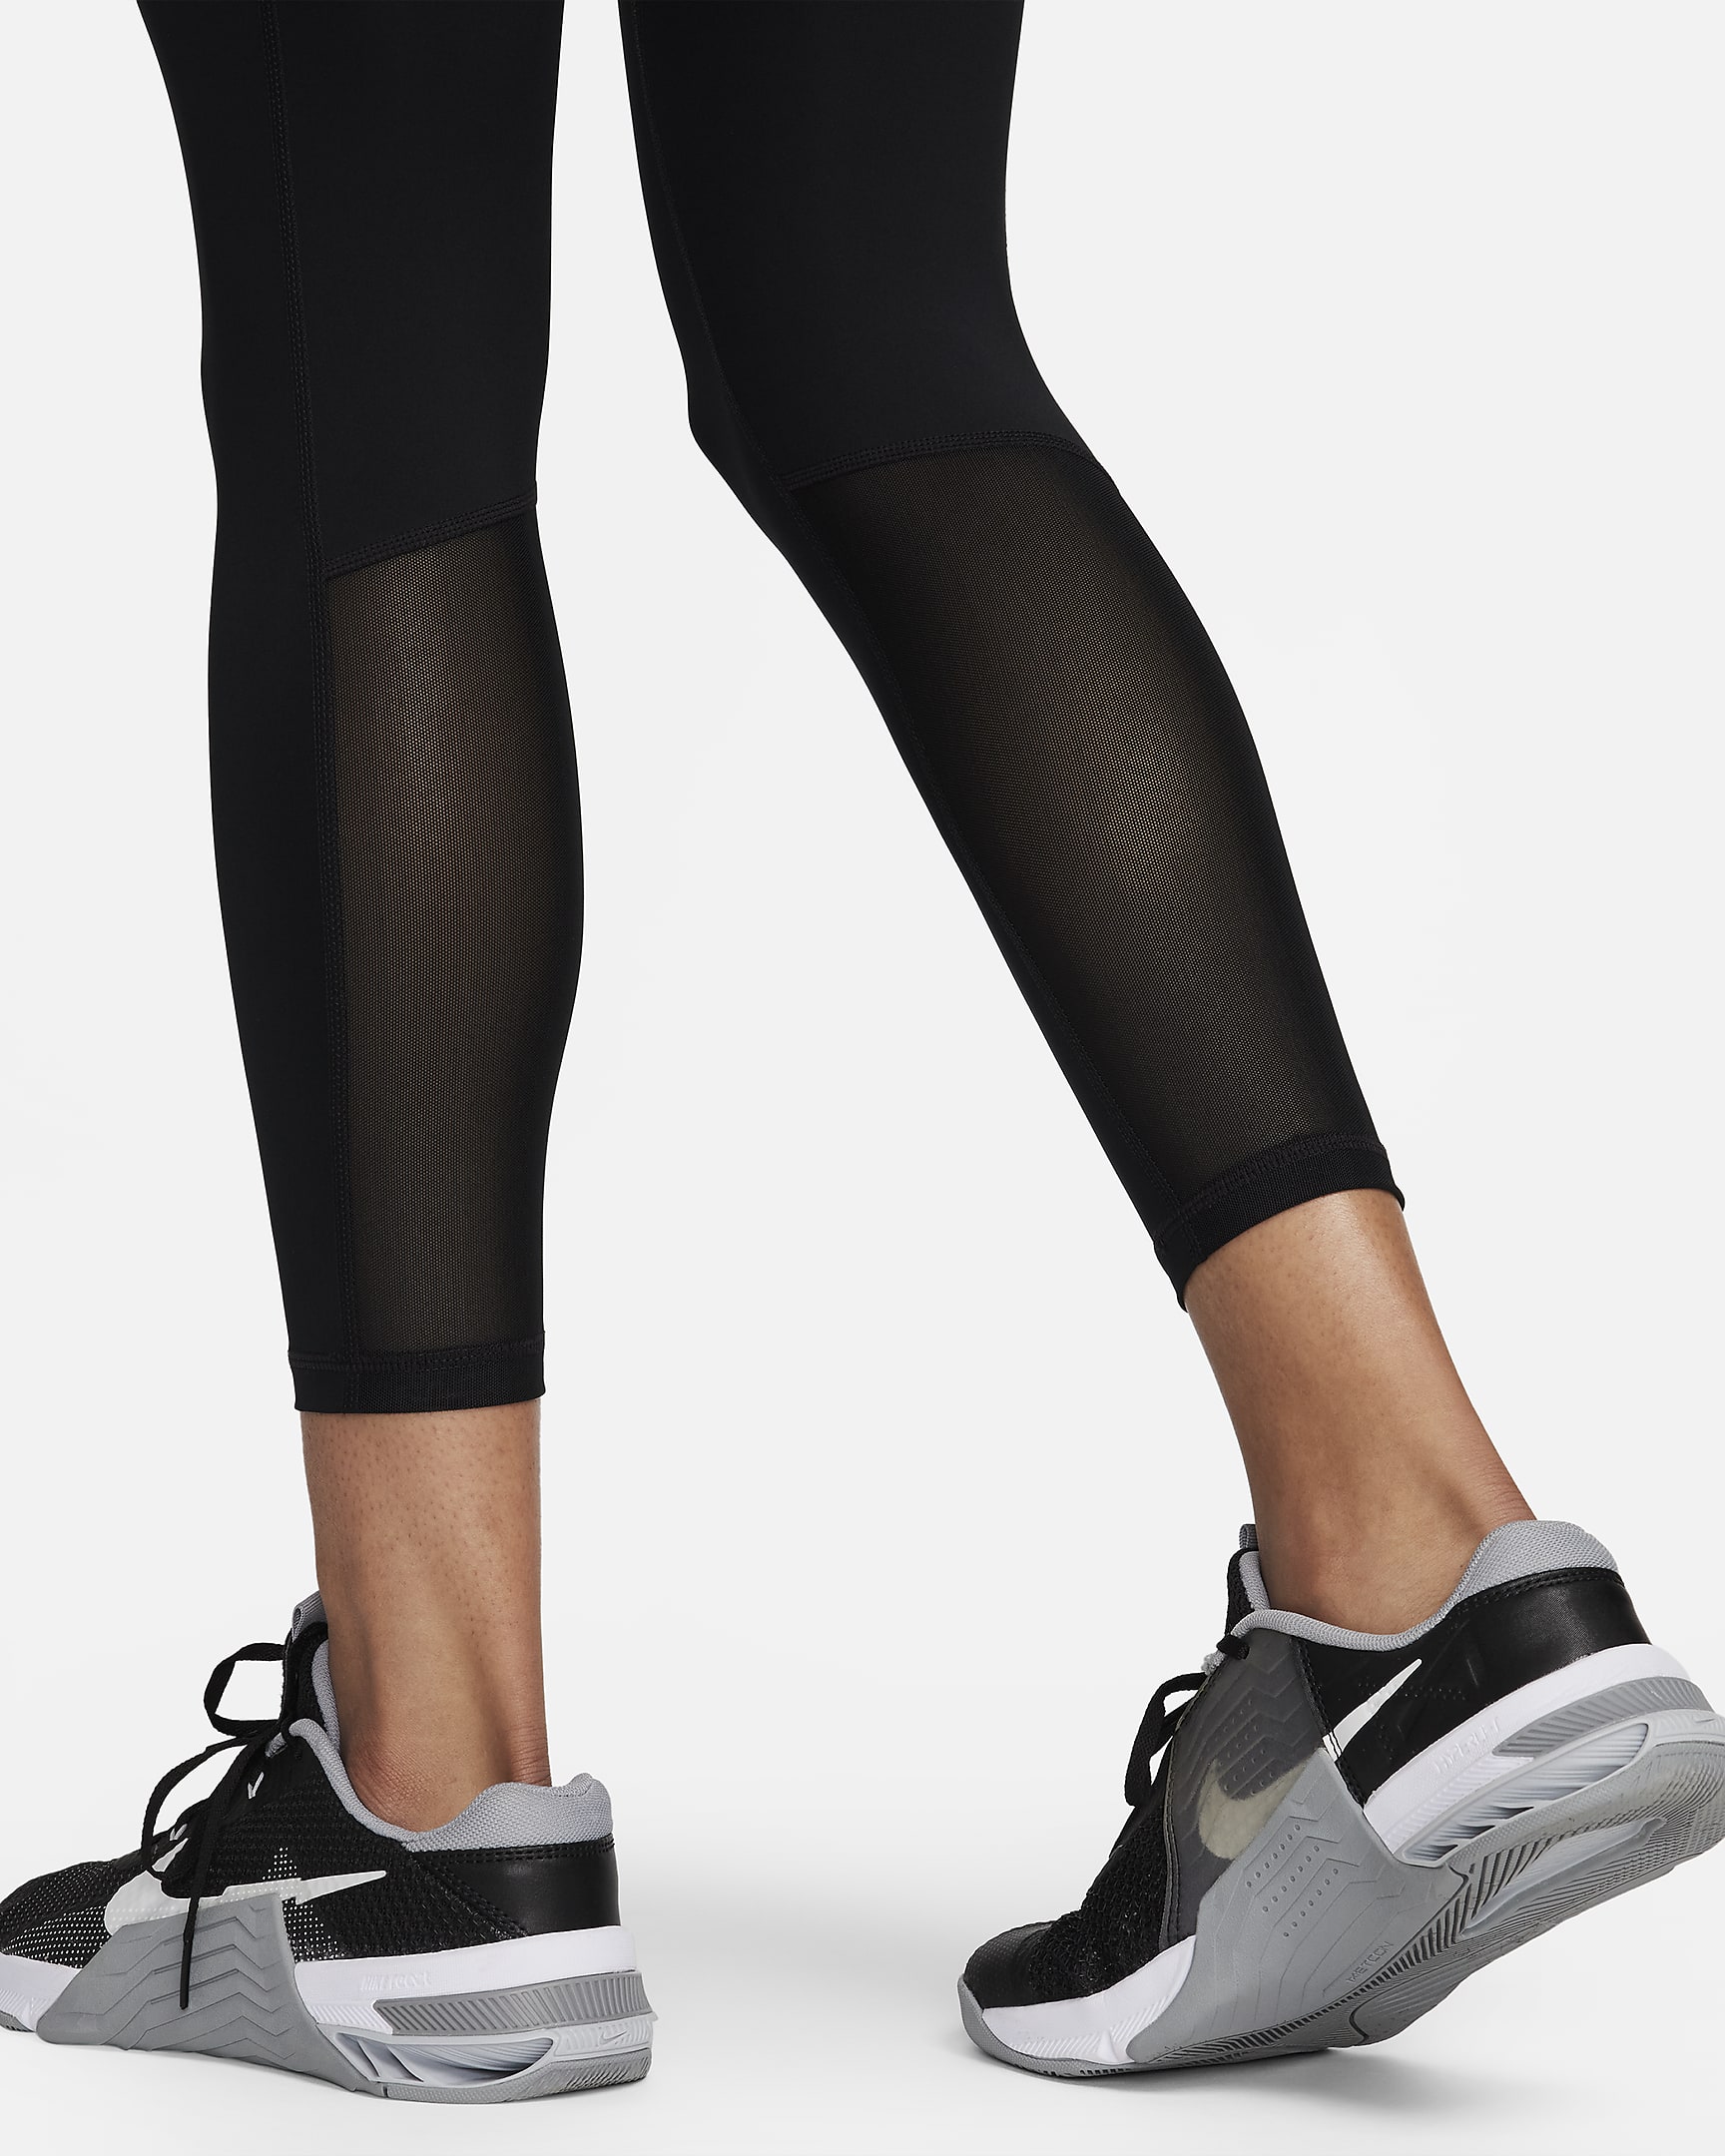 Legging 7/8 taille mi-haute Nike Pro 365 pour femme - Noir/Blanc